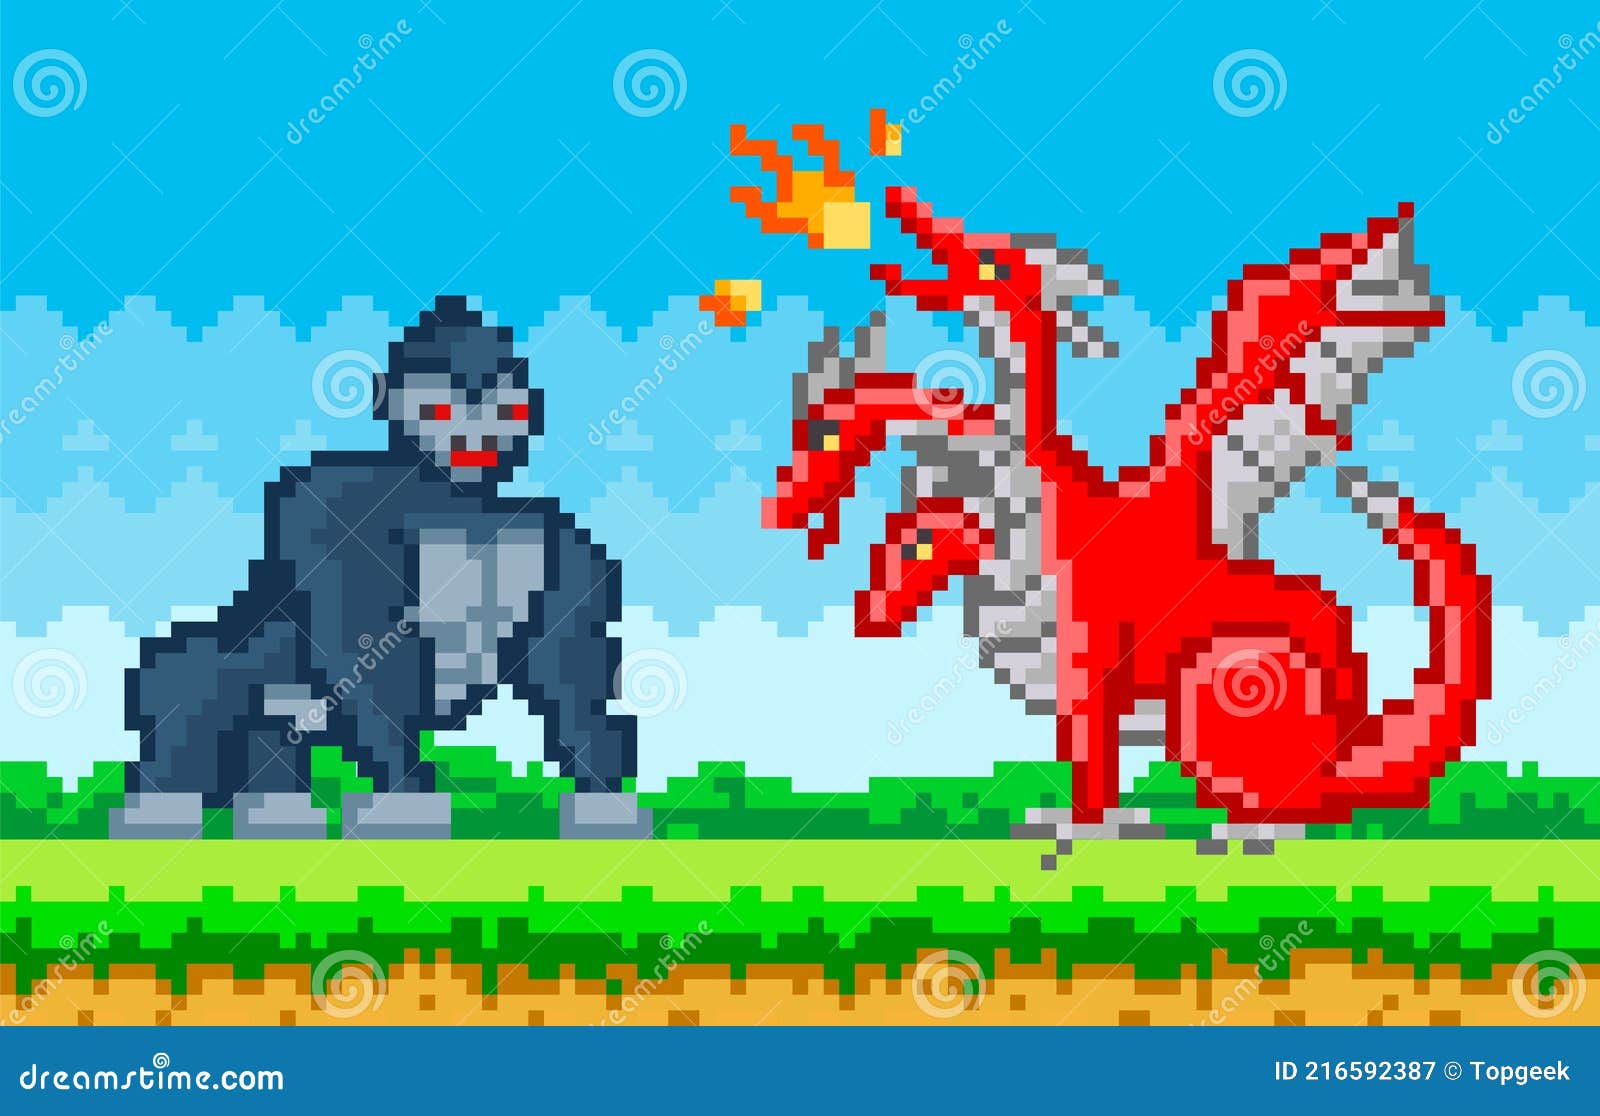 Jogo de vídeo de dragão personagem pixelizada